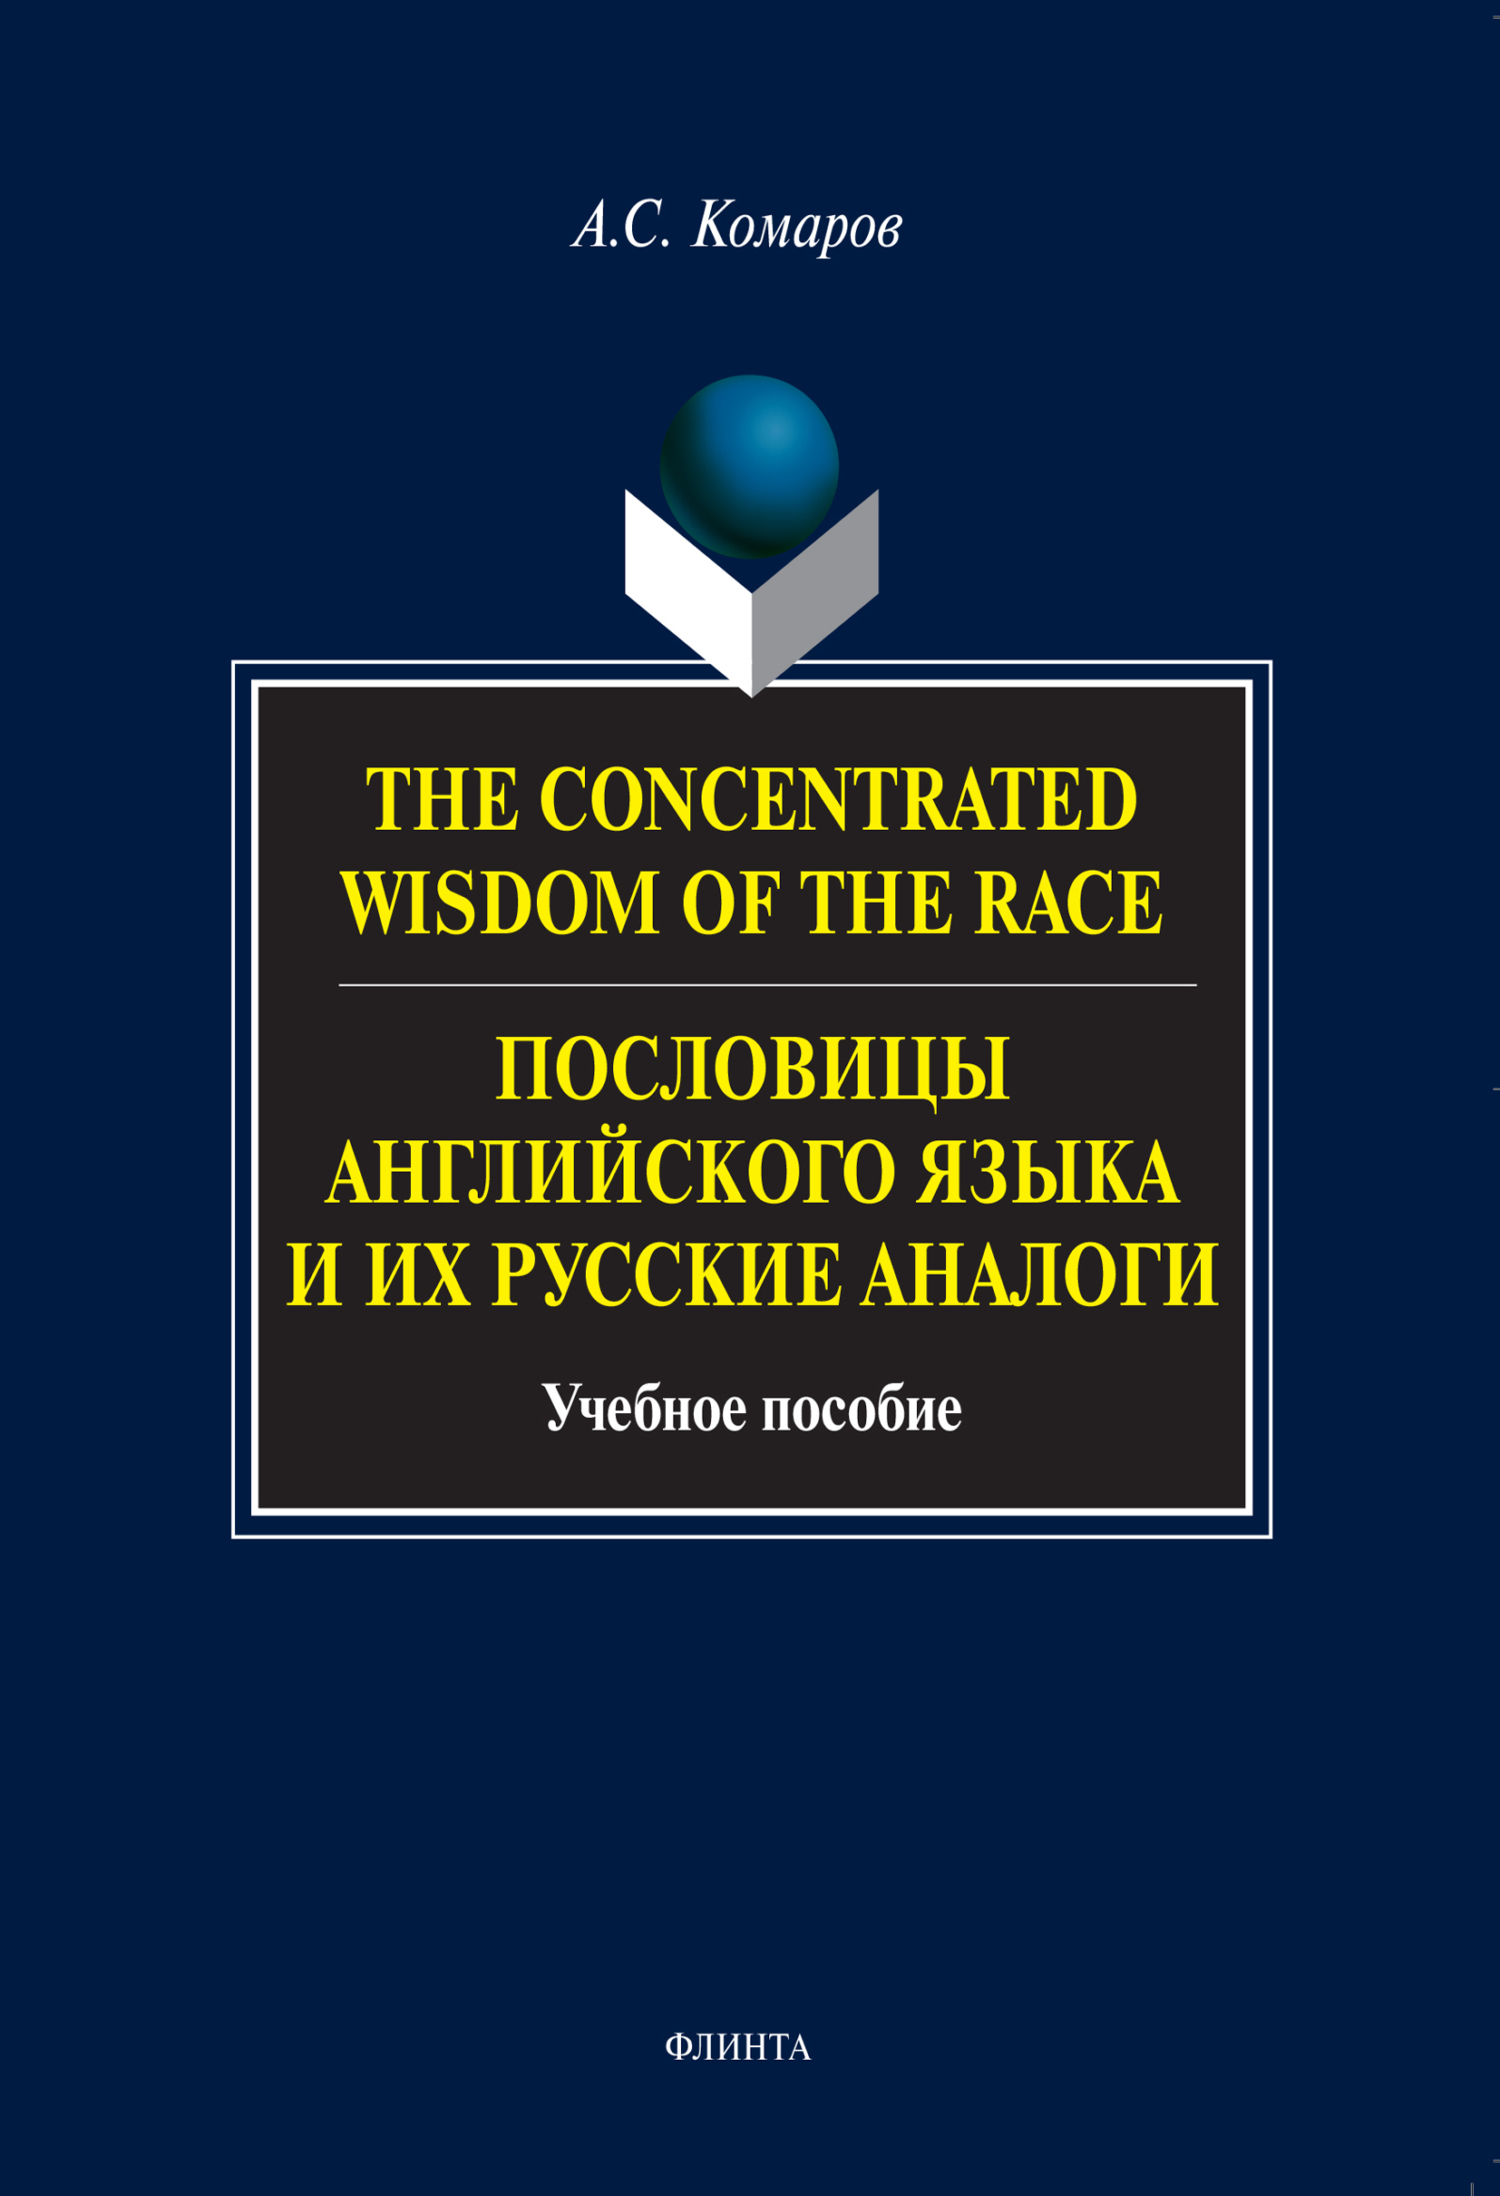 The Concentrated Wisdom of the Race.Пословицы английского языка и их русские аналоги. Учебное пособие